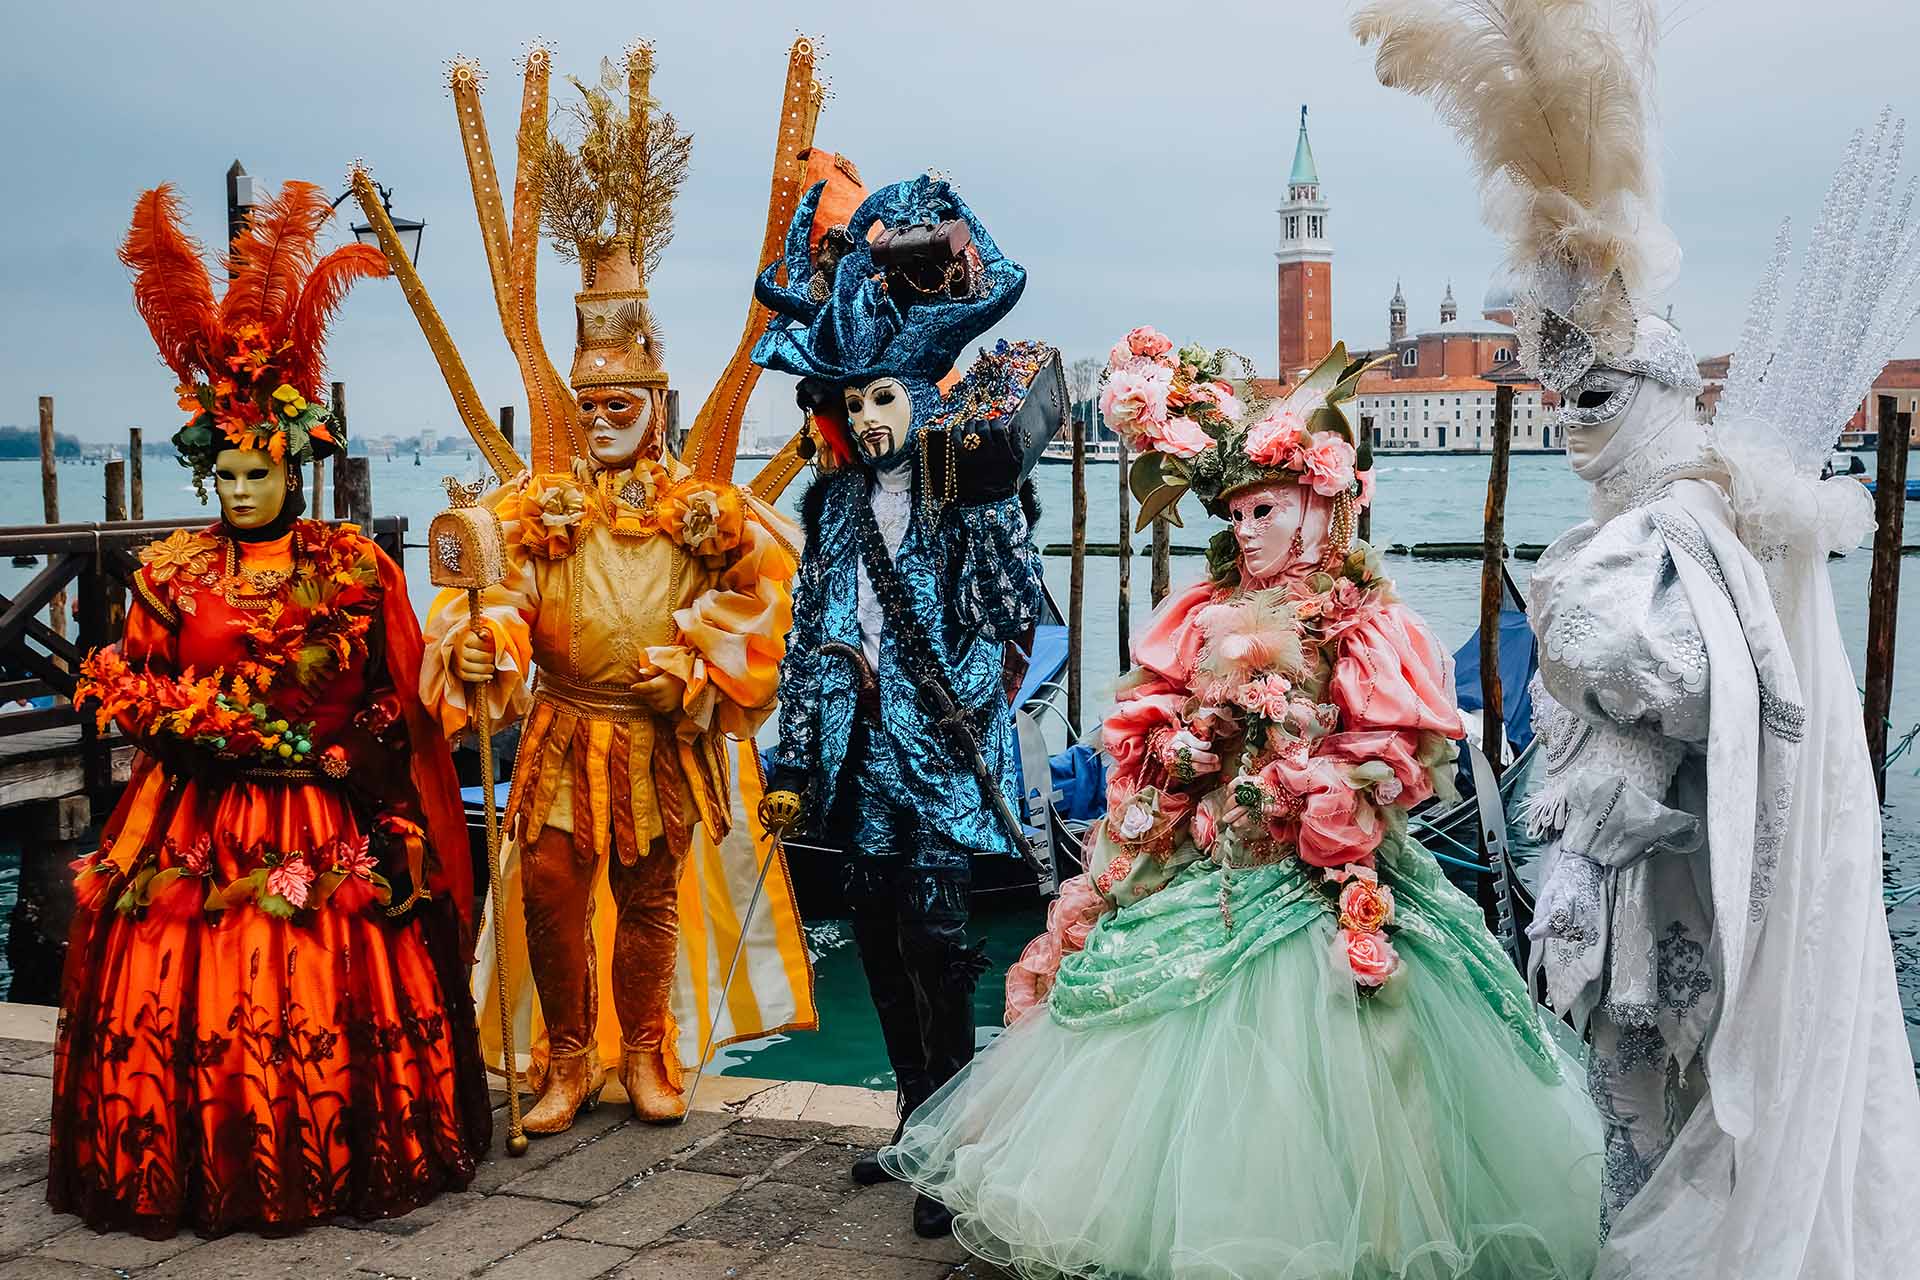 Voor op de bucketlist: carnaval in Venetië vieren